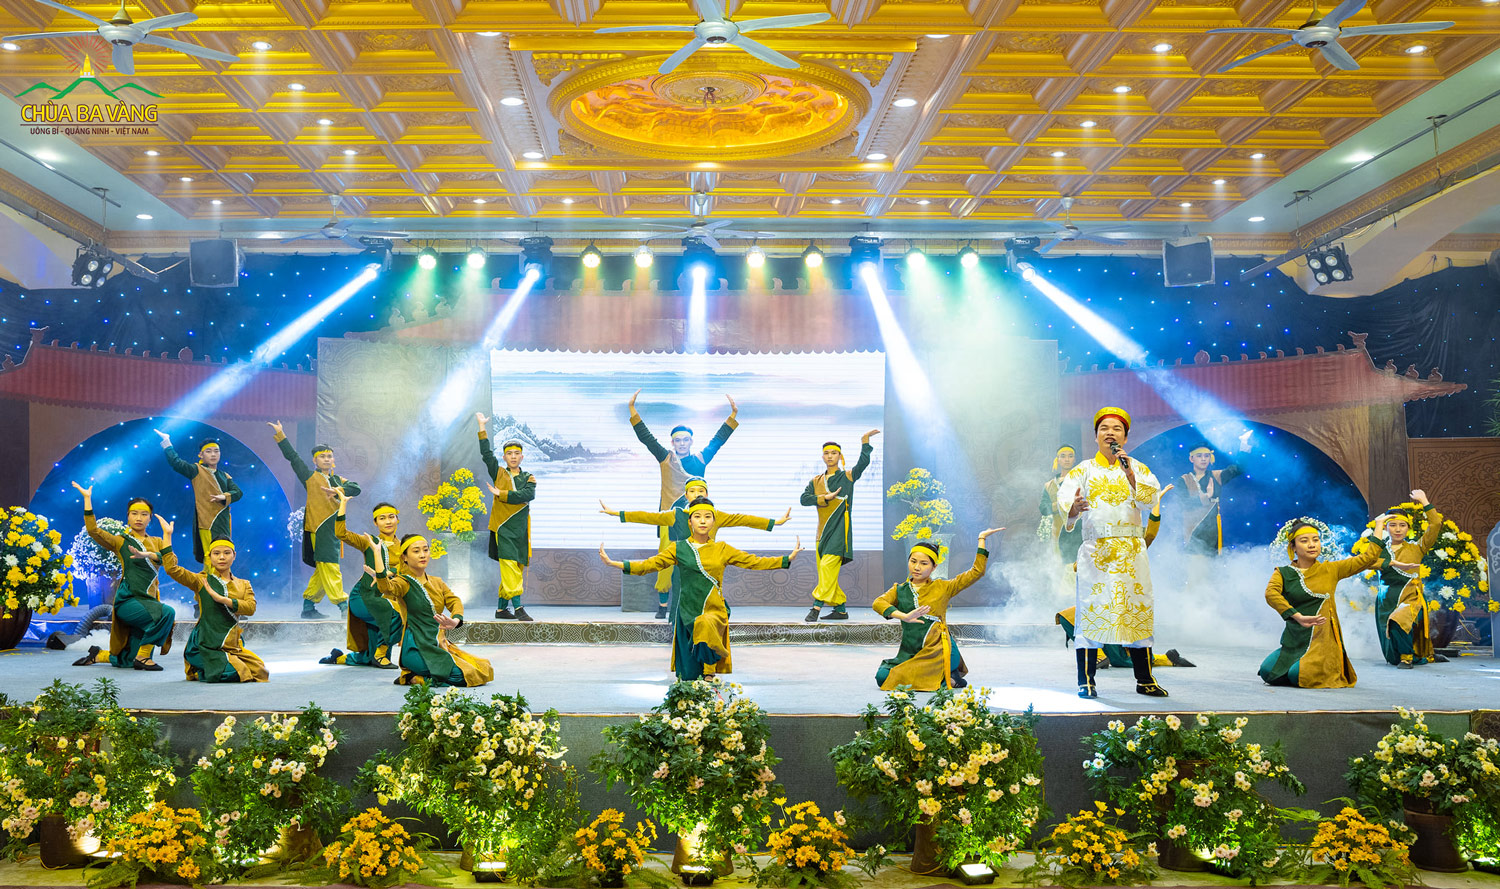 Nhạc sĩ Xuân Trí thể hiện ca khúc Đất tổ linh thiêng tại sân khấu chùa Ba Vàng (ảnh năm 2021)
